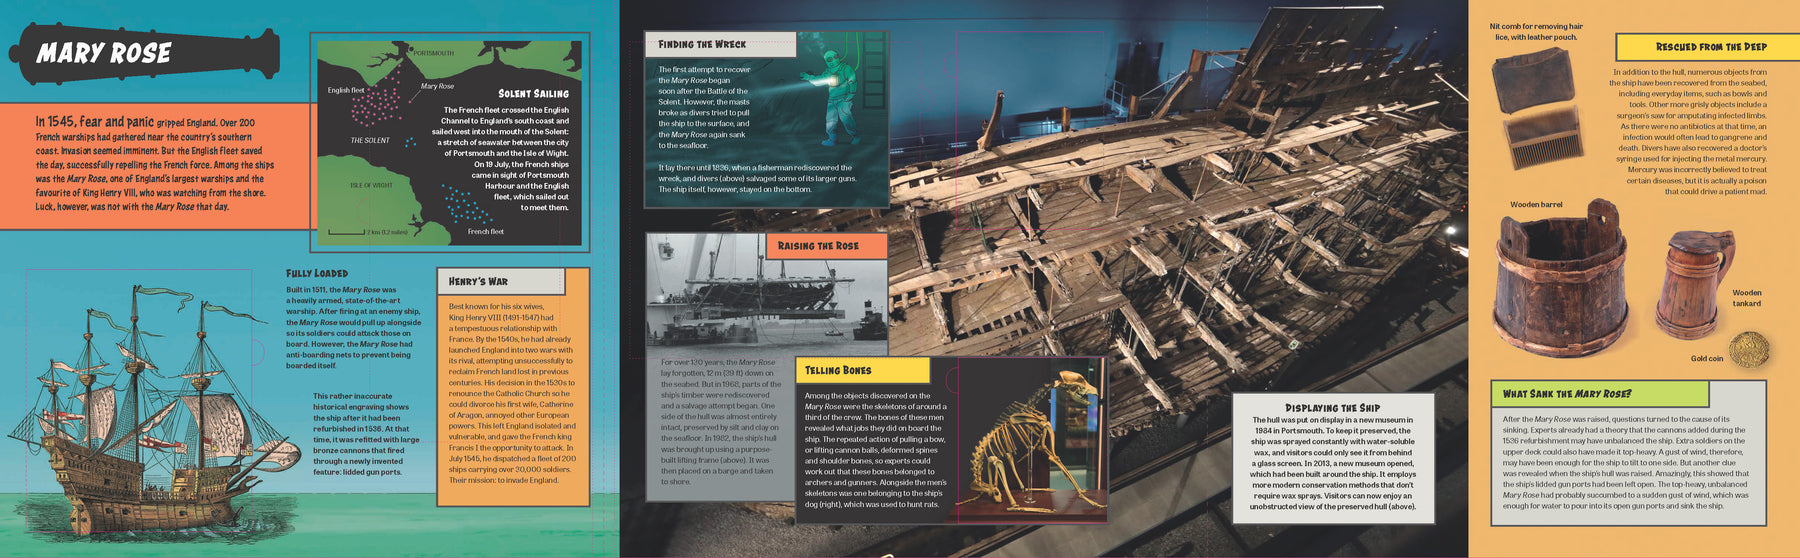 Lost at Sea! Shipwrecks (North and South America edition)